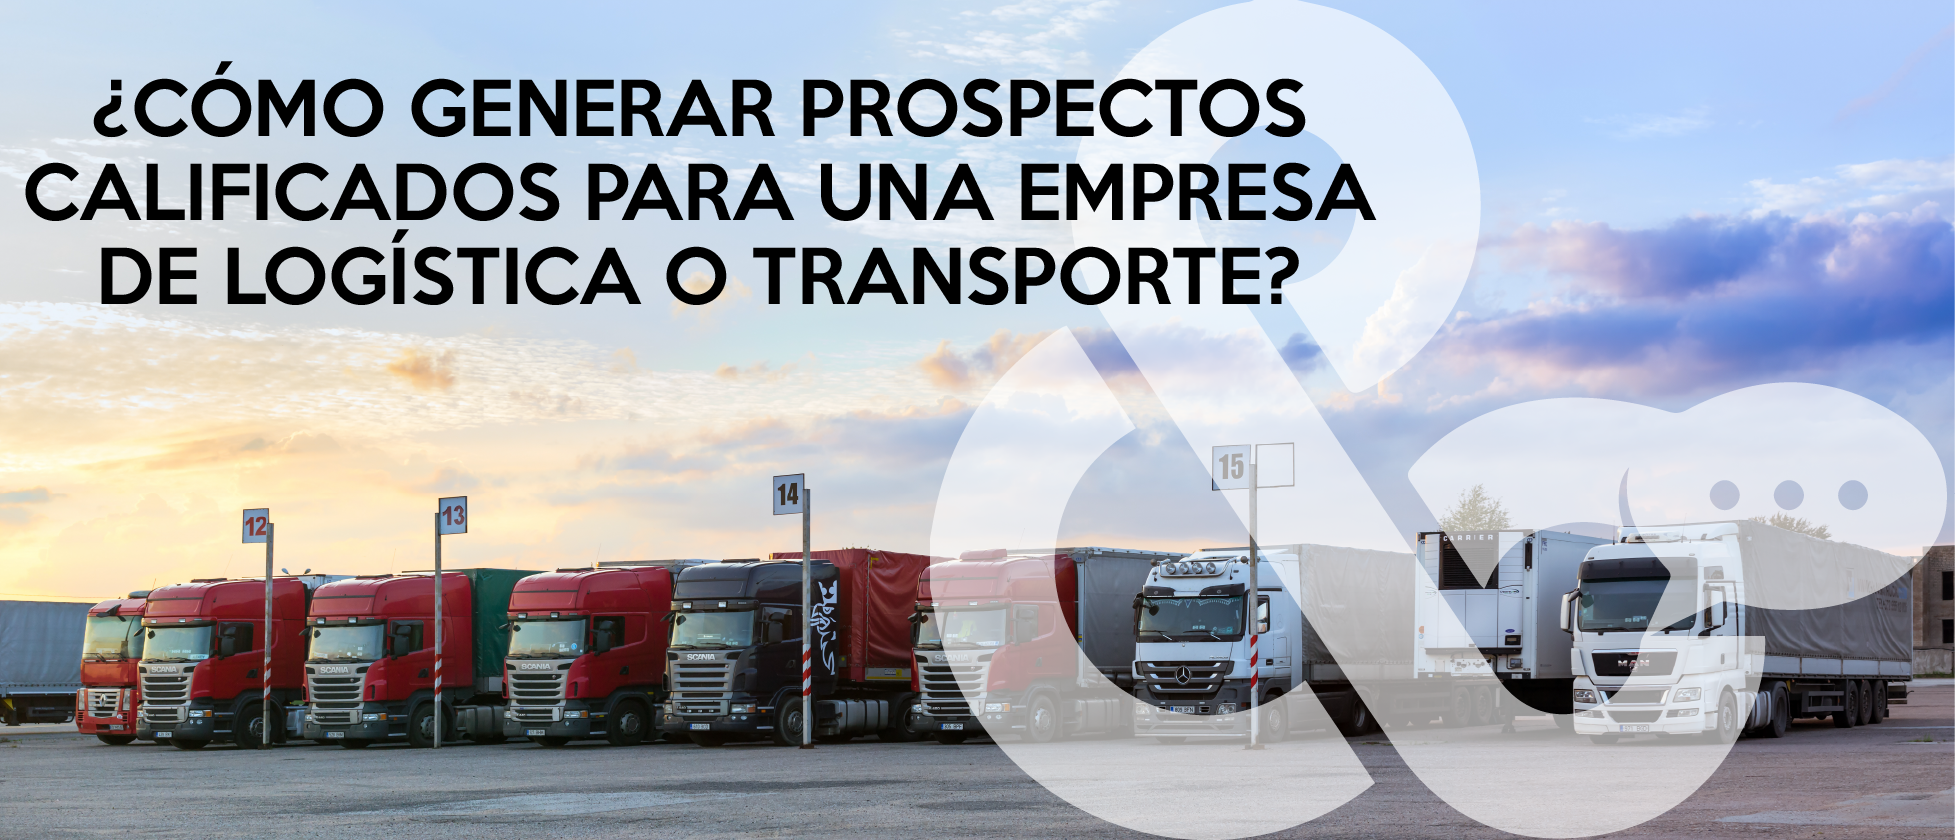 ¿Cómo generar prospectos calificados para una empresa de logística y transporte?